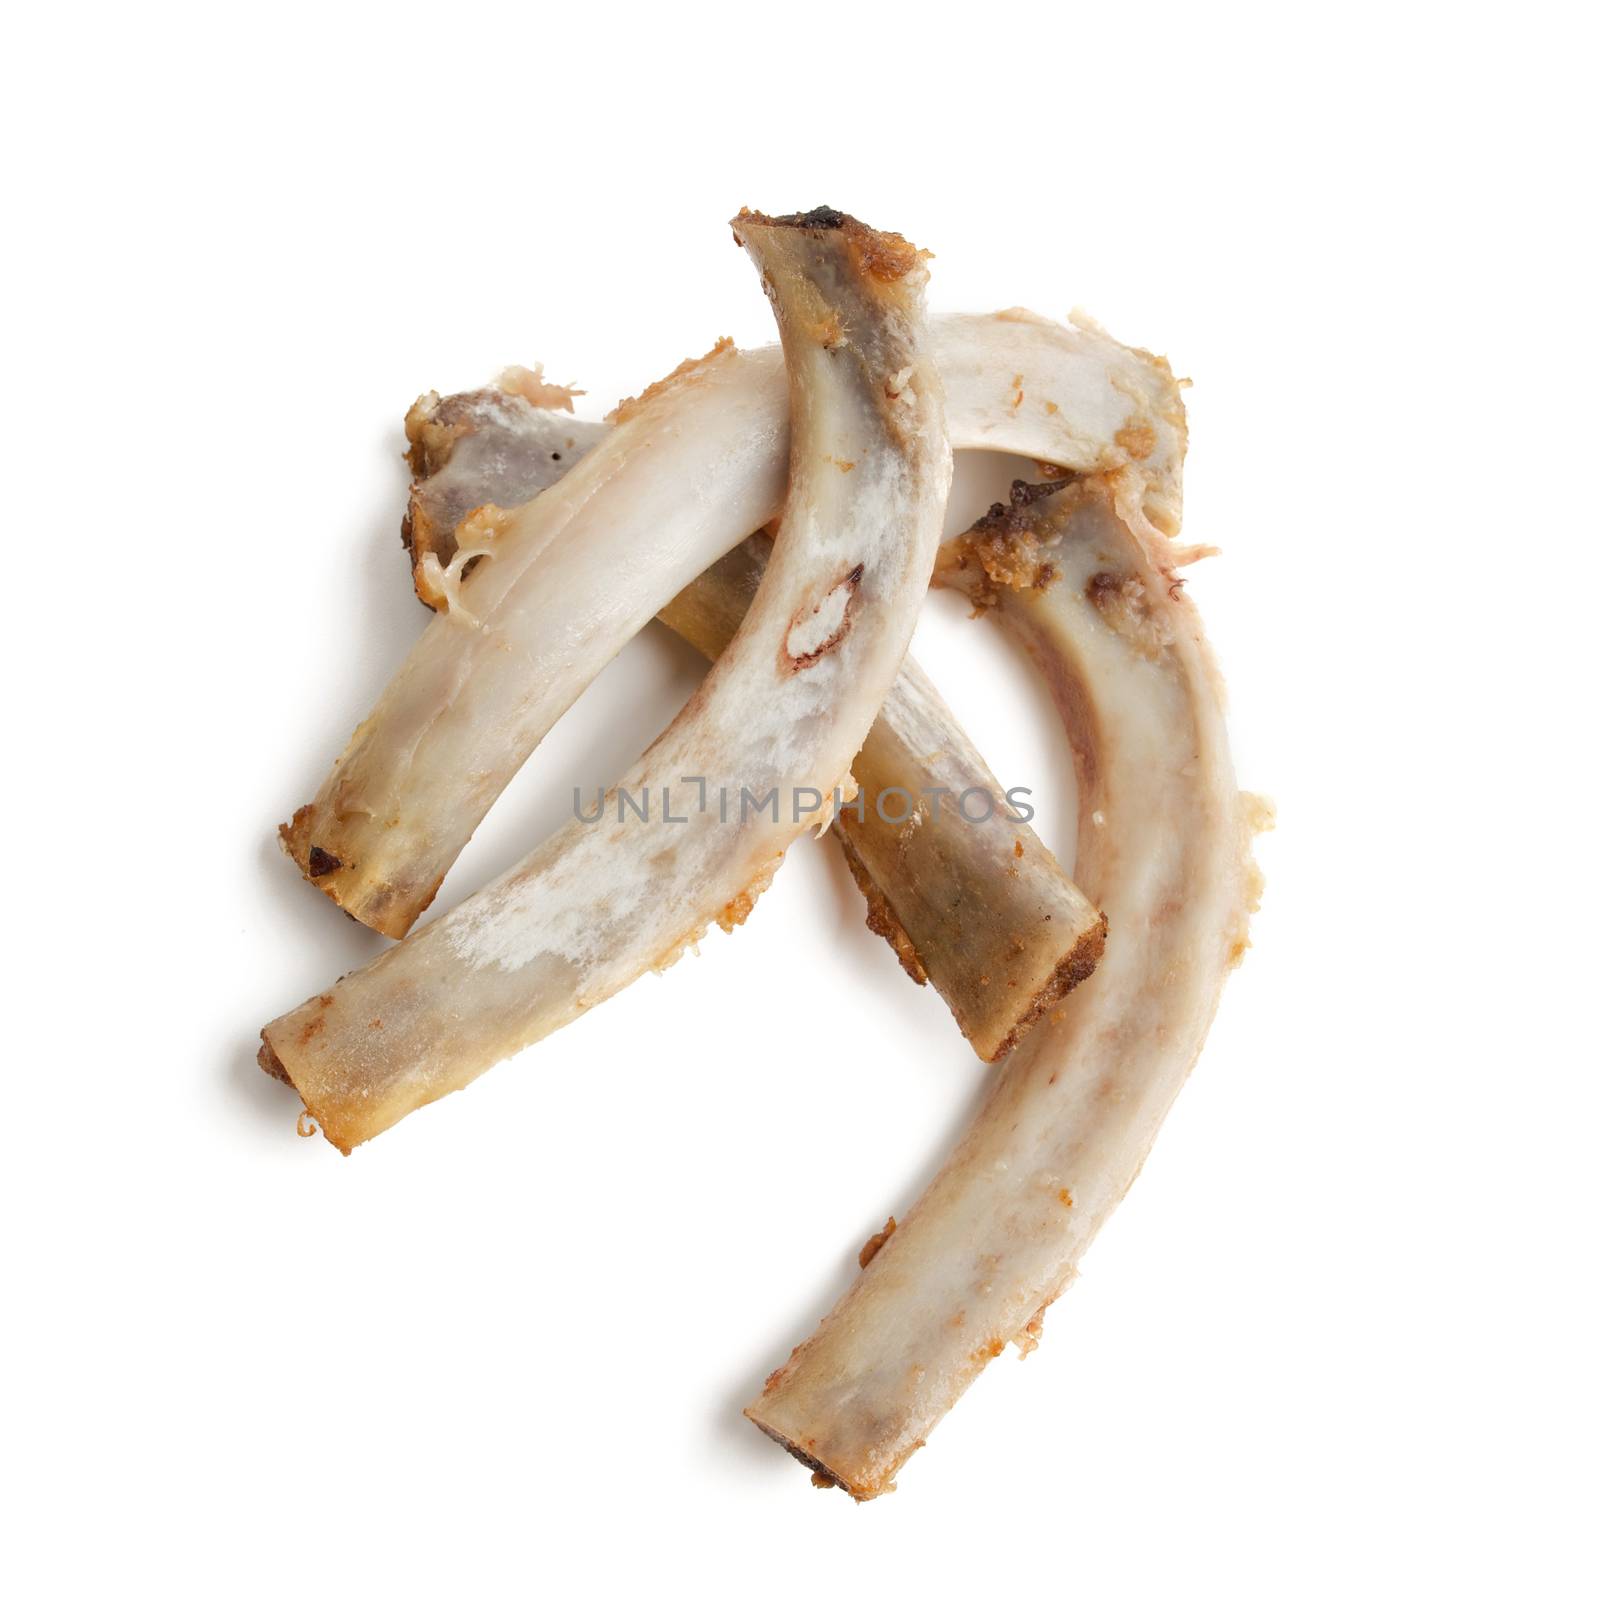 Pork rib bones on white background